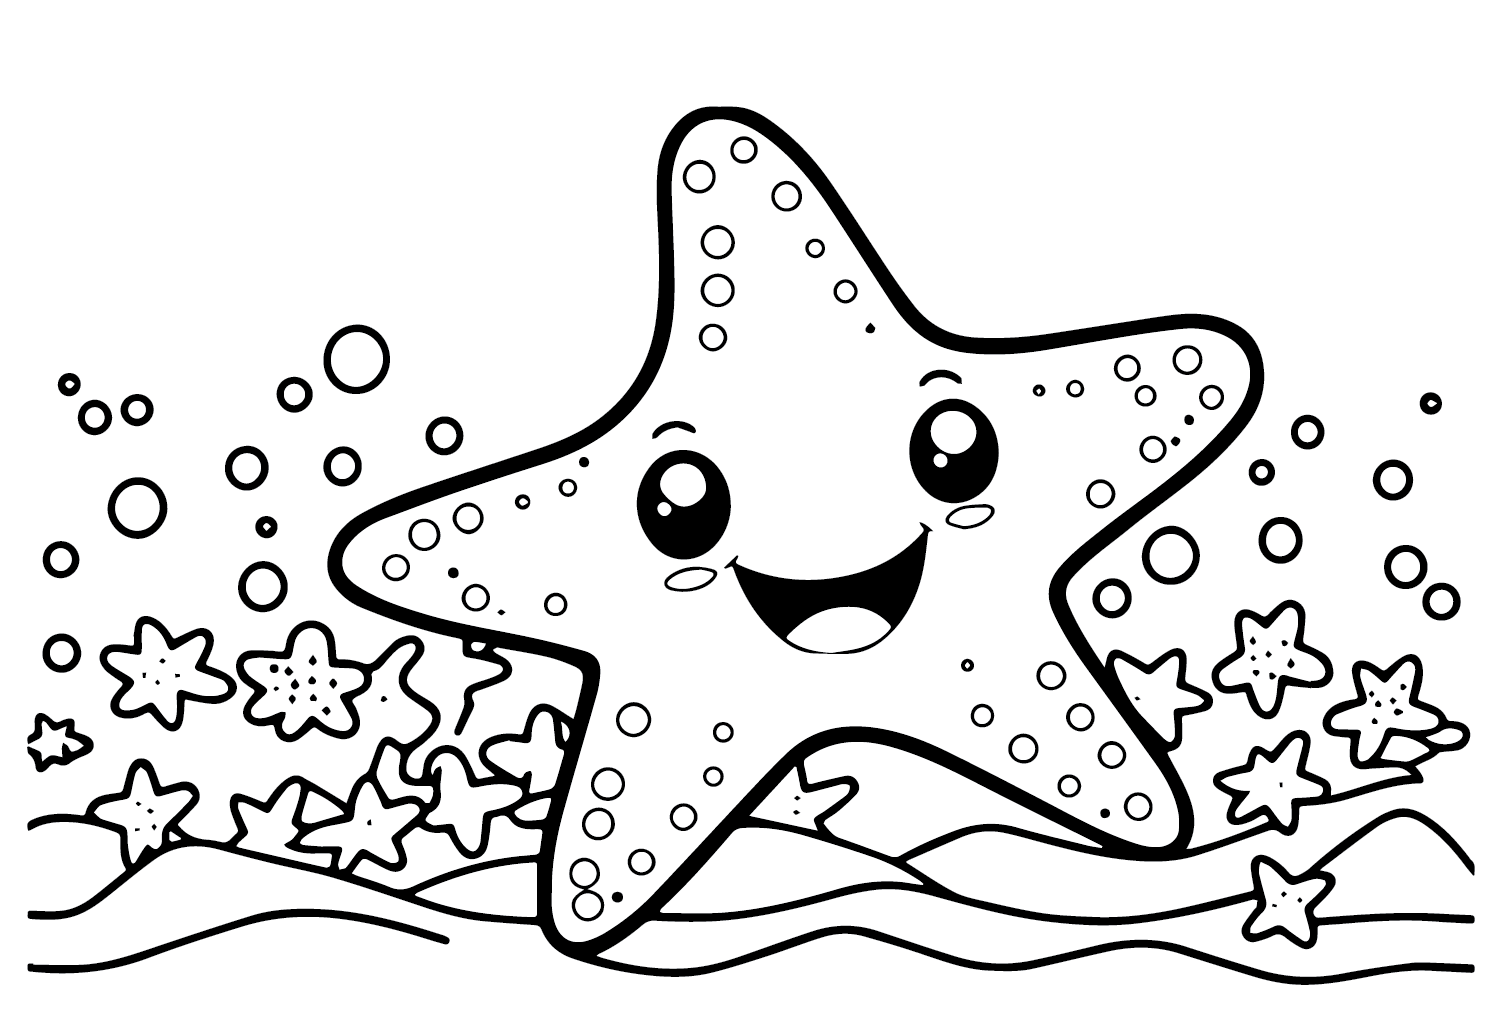 Happy Starfish from Starfish